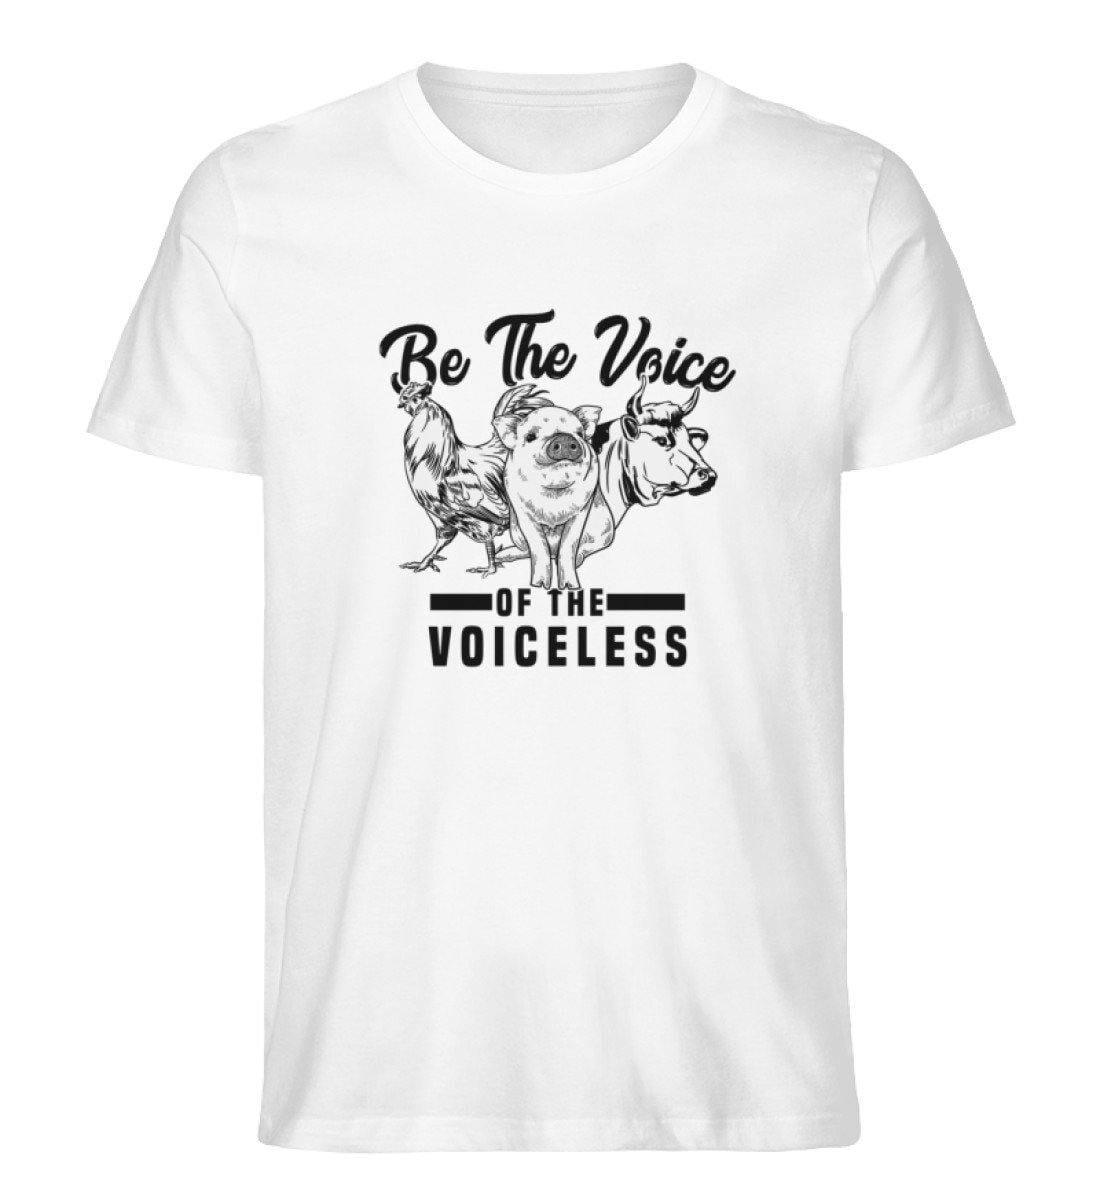 Be The Voice of the voiceless - Unisex Organic Shirt Rocker T-Shirt ST/ST Shirtee Weiß S 